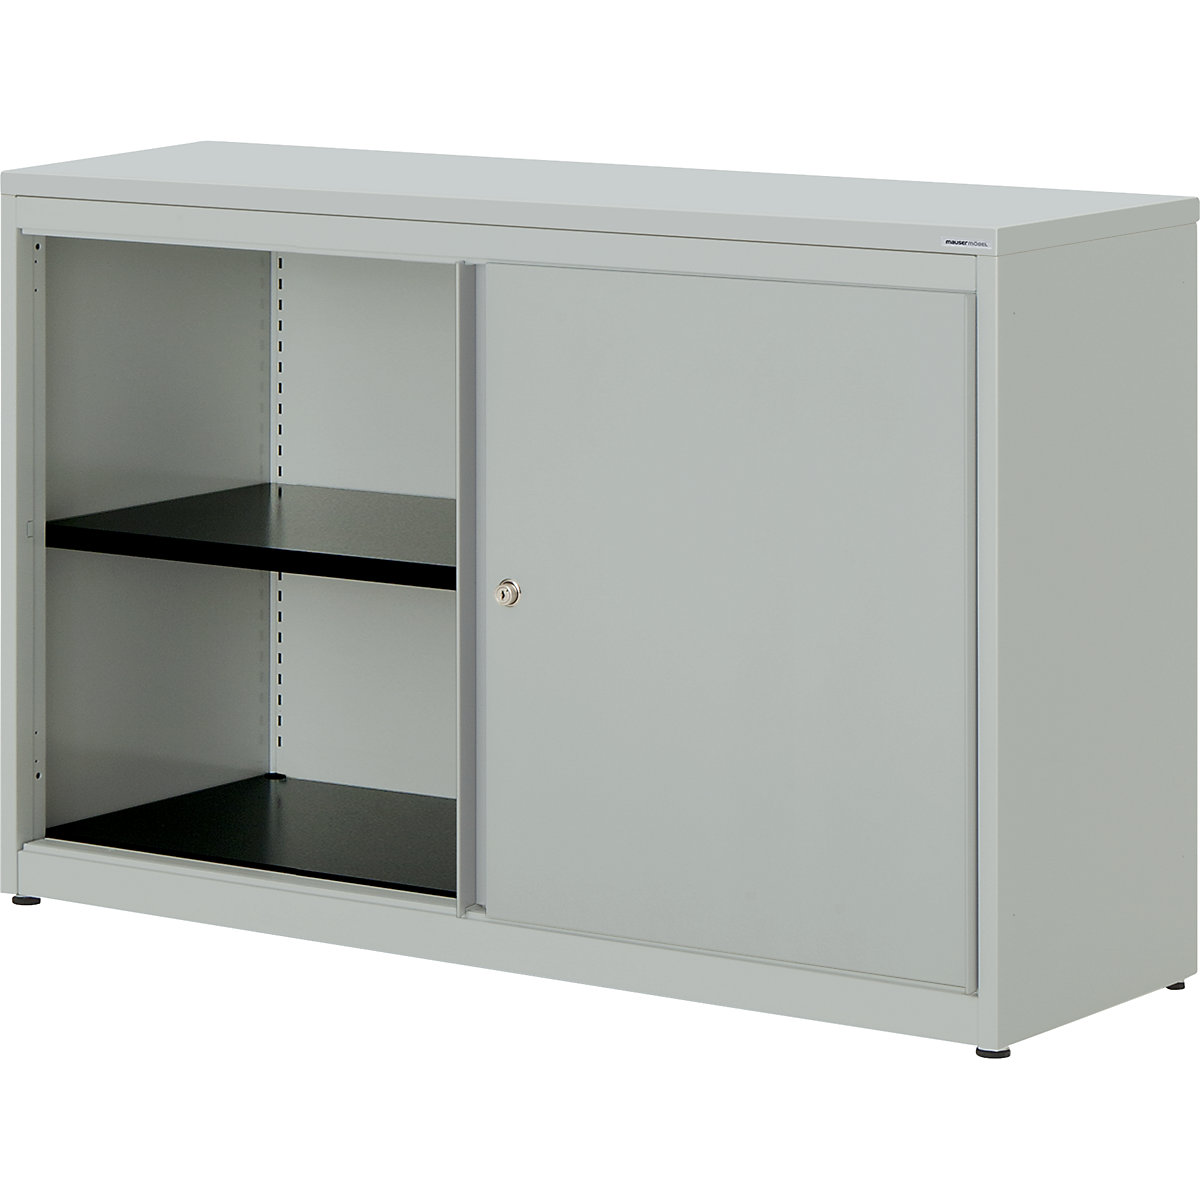 Sliding door cupboard – mauser, HxWxD 830 x 1200 x 432 mm, plastic panel, 1 shelf, light grey / light grey / light grey-2